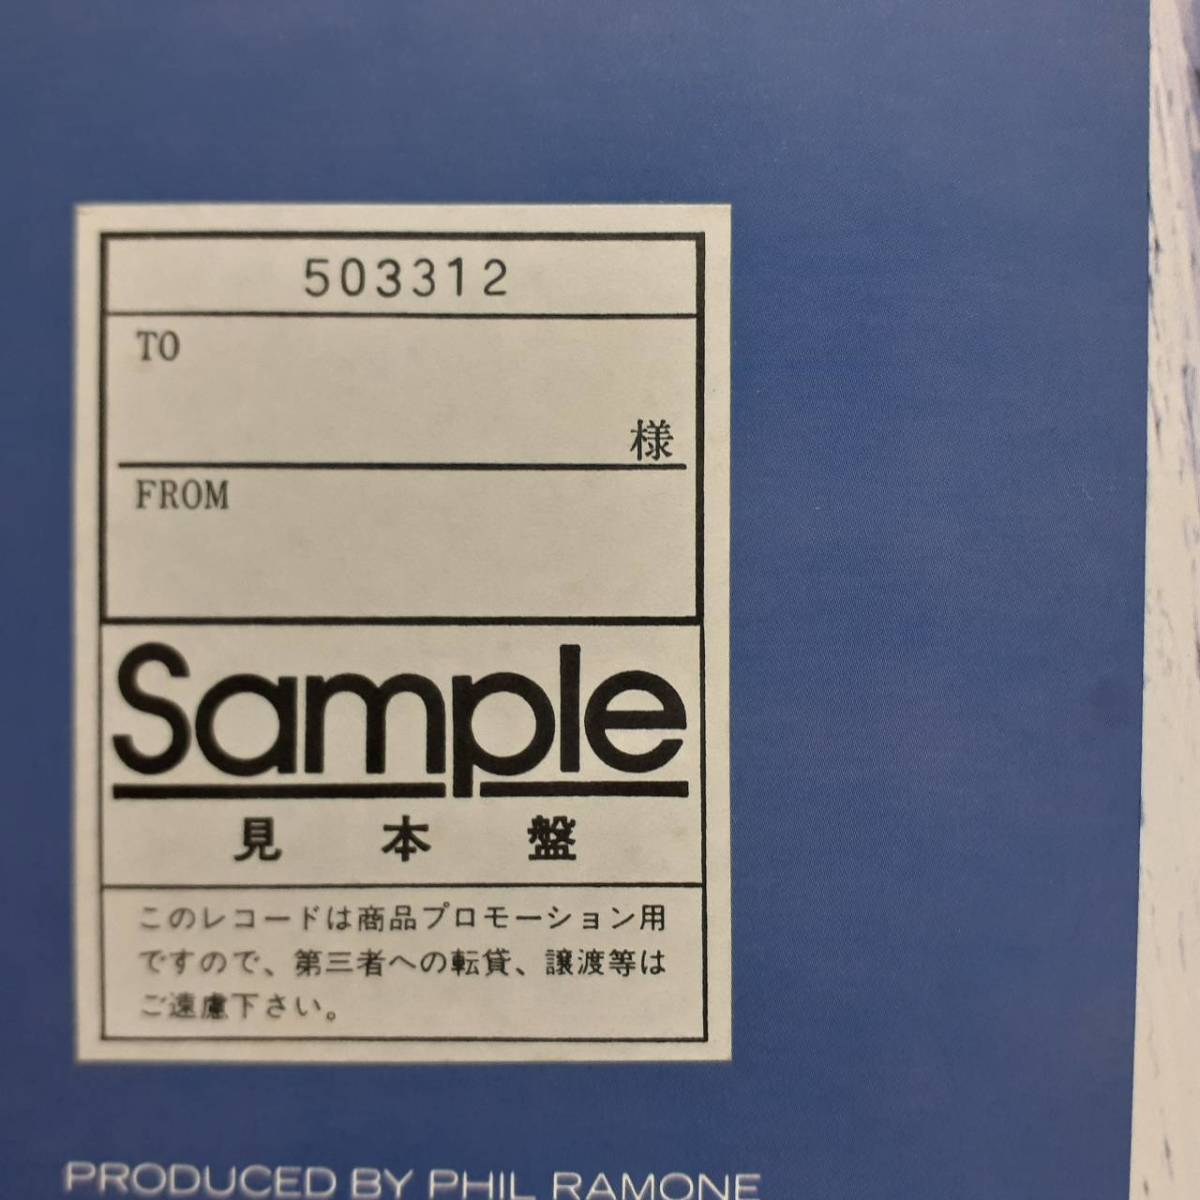 редкий! Promo Japan Edition LP! Главная доска! Билли Джоэл / The Bridge 1986 CBS Sony 28AP 3220 Билли Джоэл, мост Фил Рамон, последняя работа